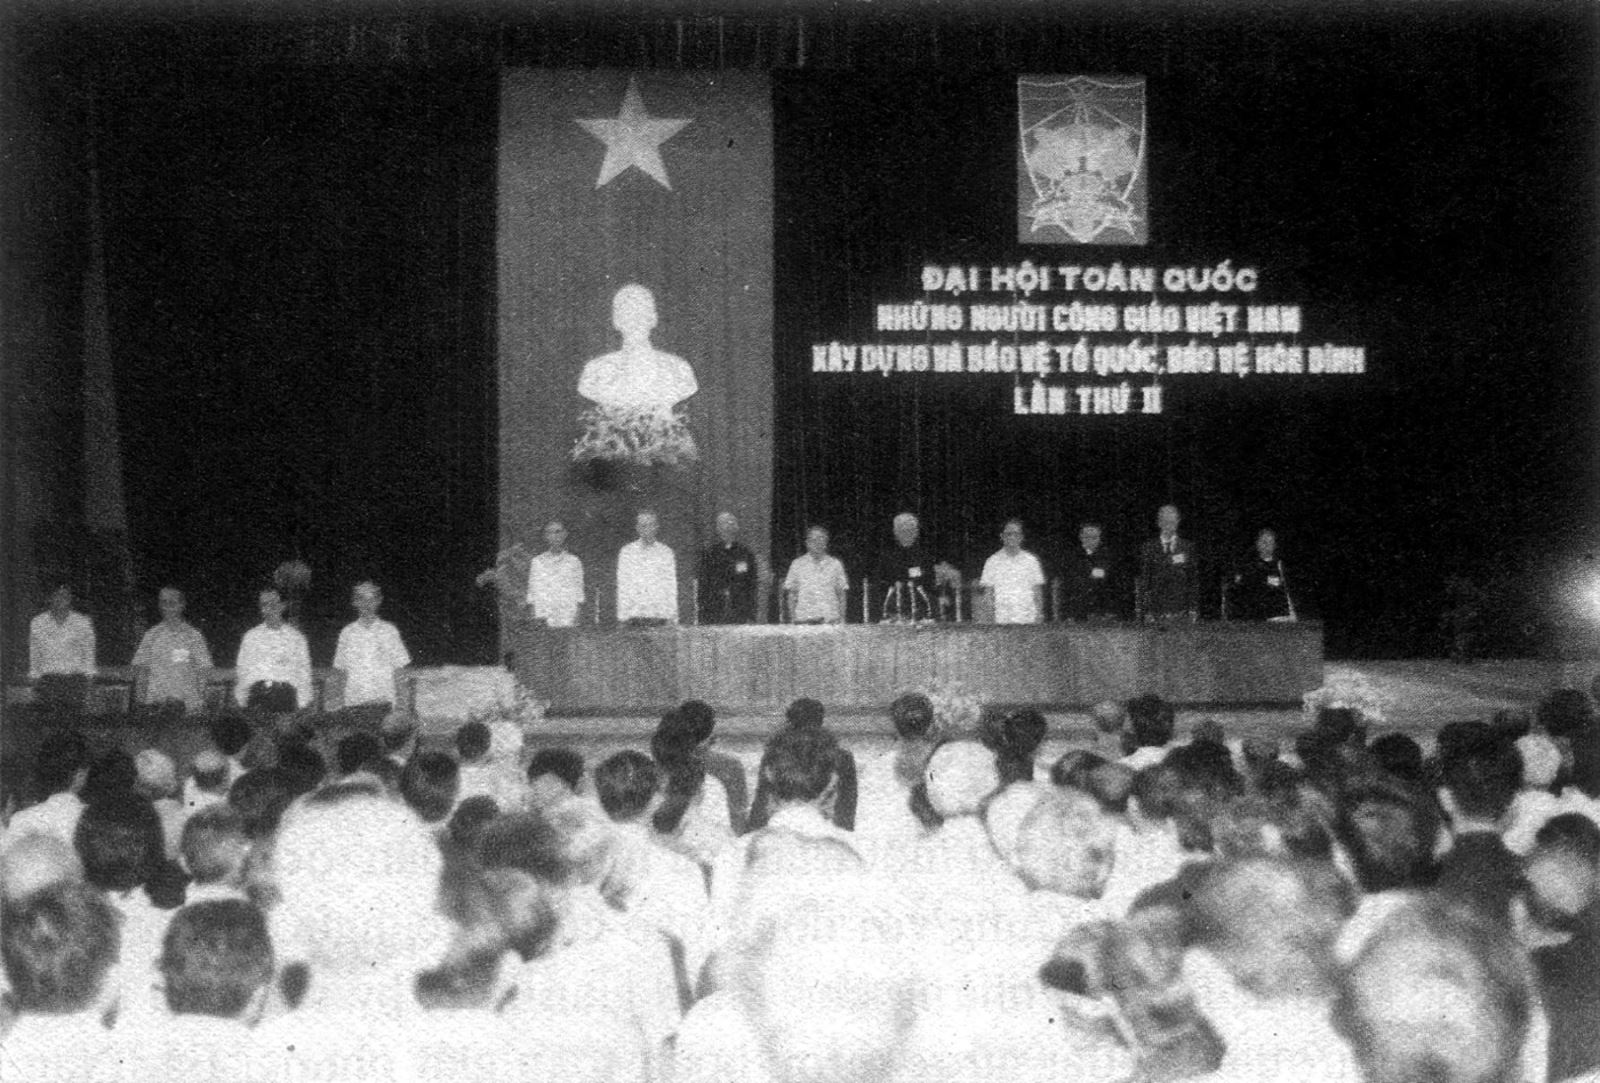 Quang cảnh Đại hội Công giáo toàn quốc lần thứ II tại Hà Nội.